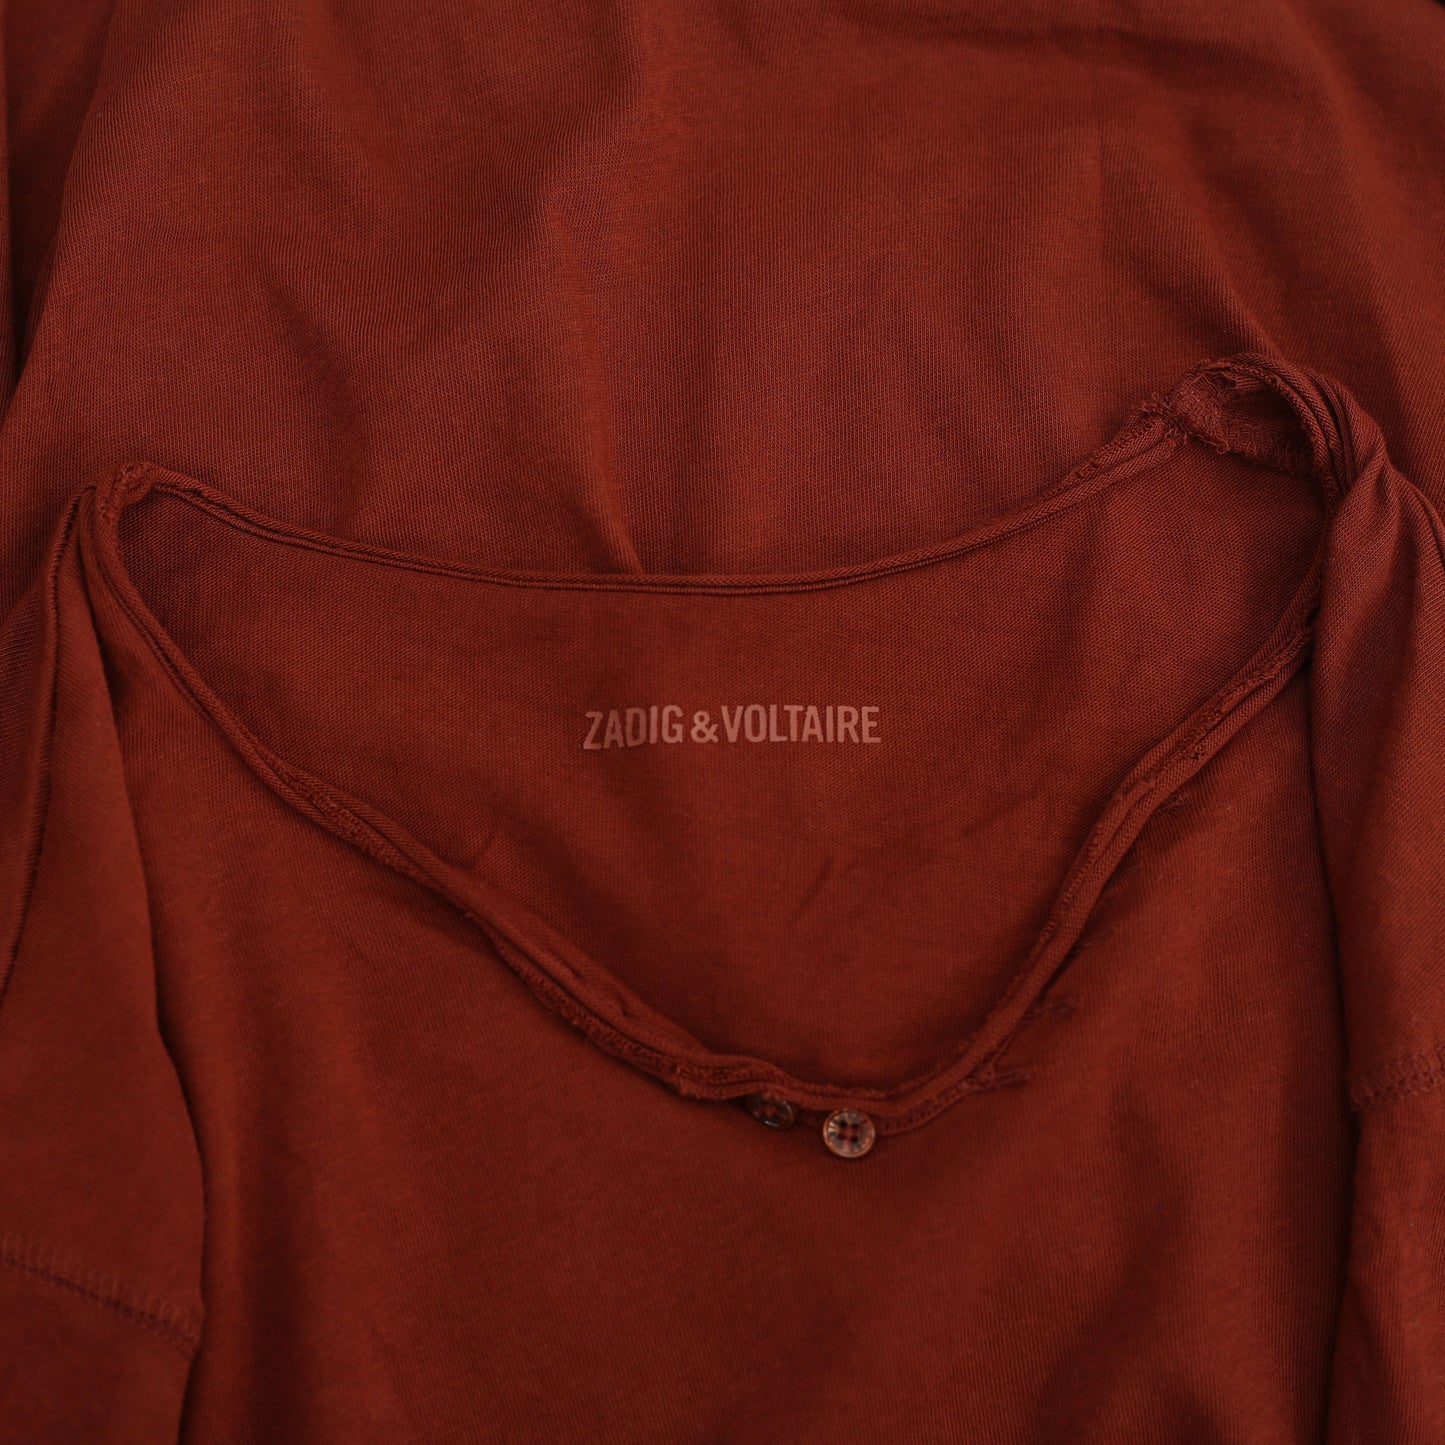 Zadig & Voltaire Monastir MC I Hope Men's T-Shirt